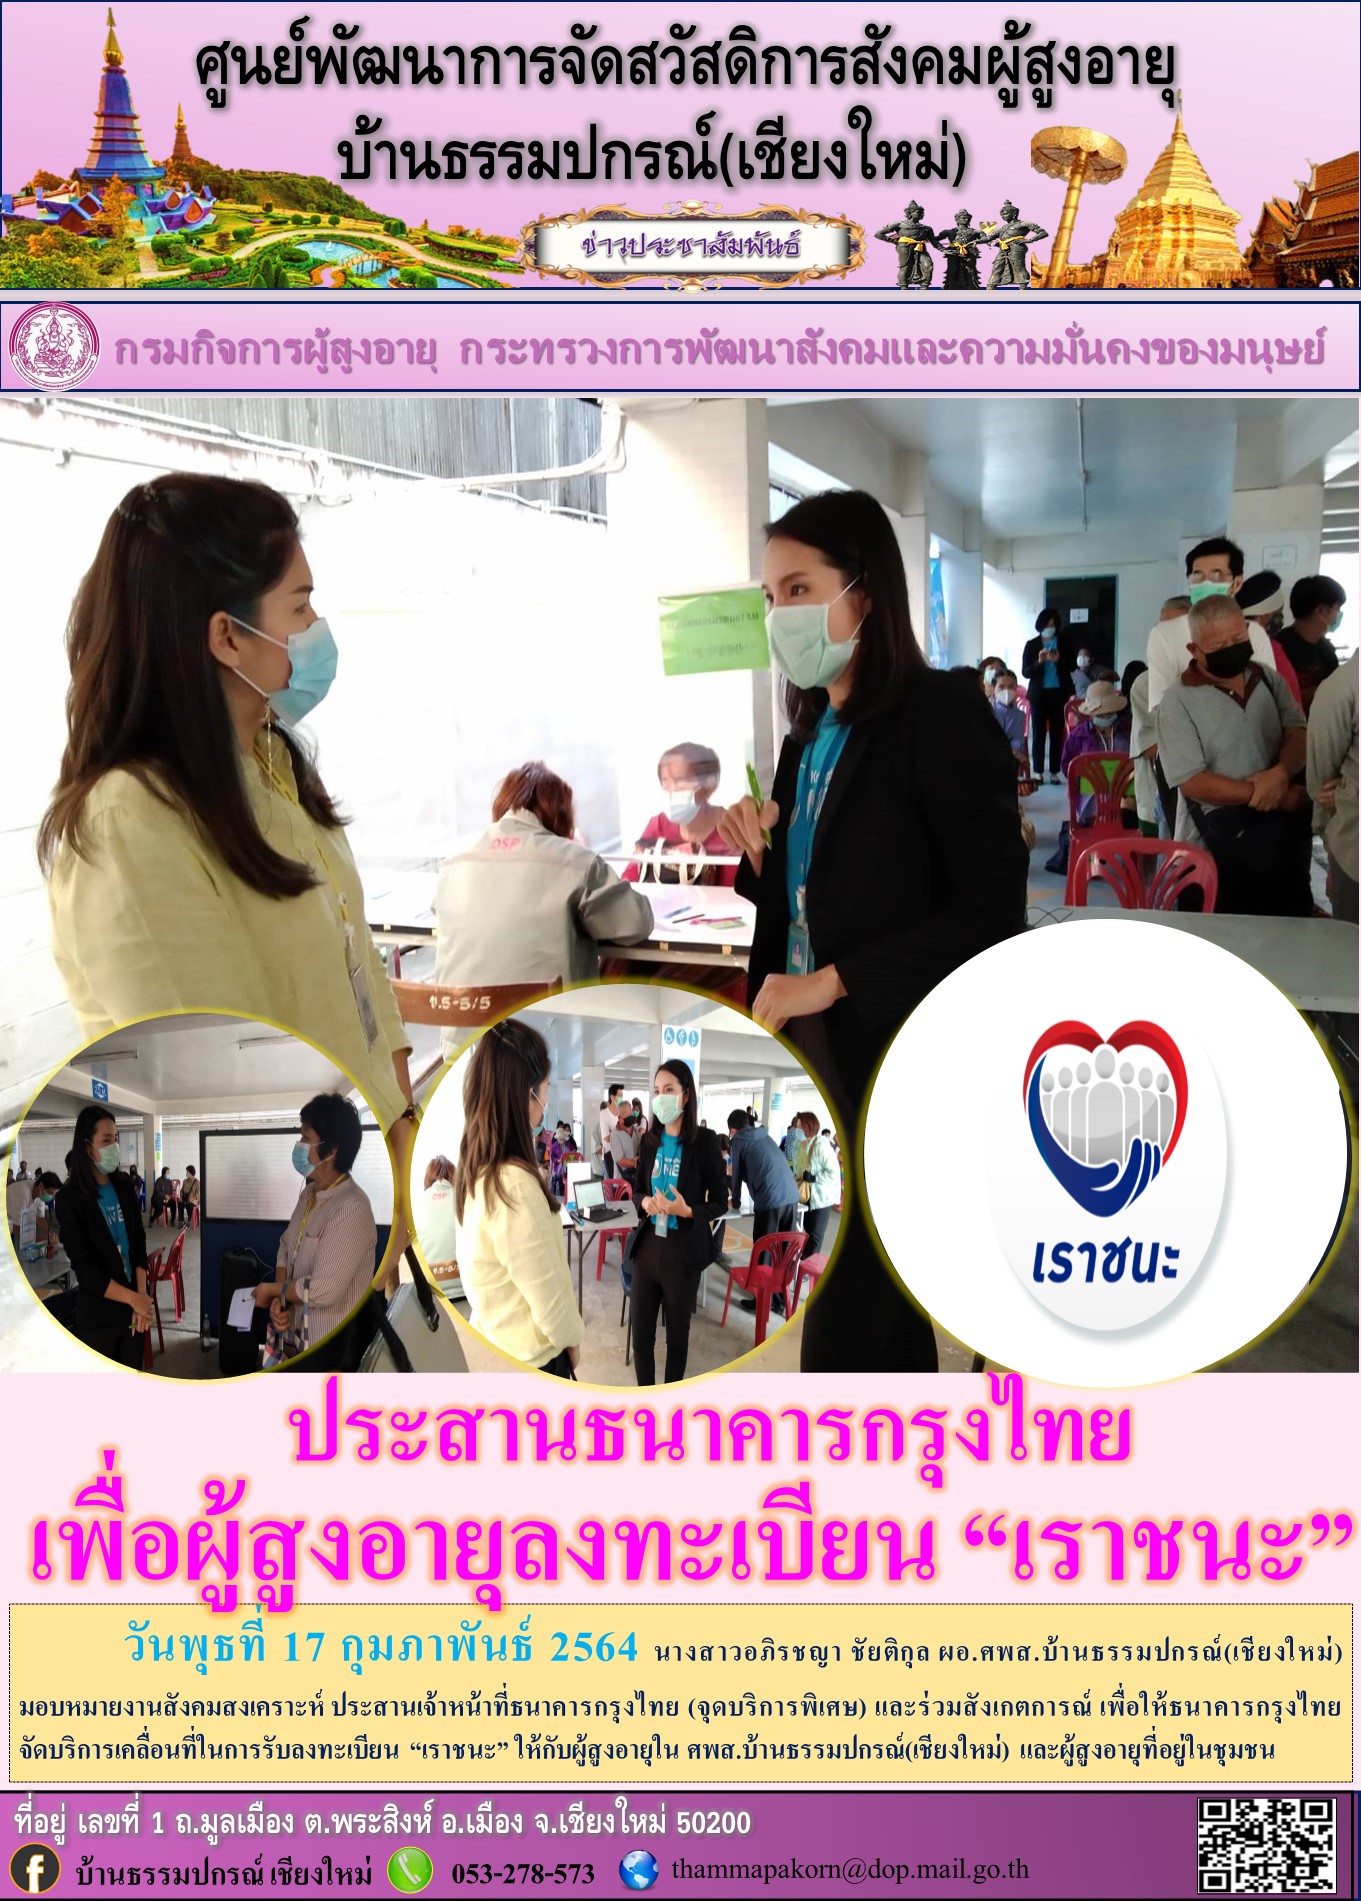 ประสานธนาคารกรุงไทยเพื่อผู้สูงอายุลงทะเบียน “เราชนะ”